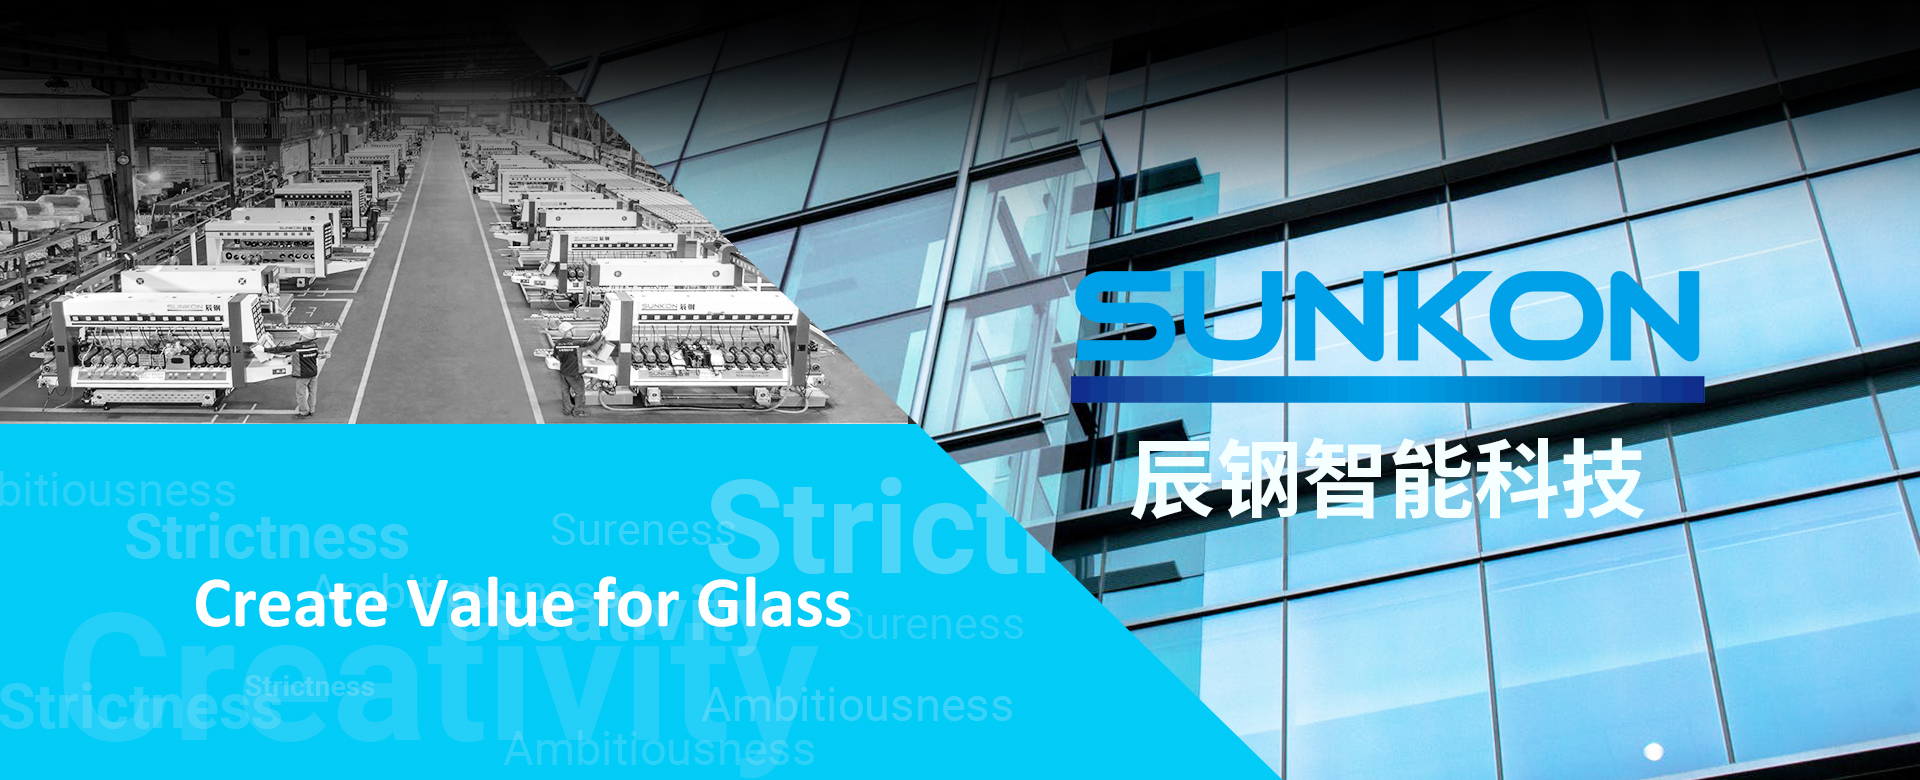 SUNKON Creates Value for Glass